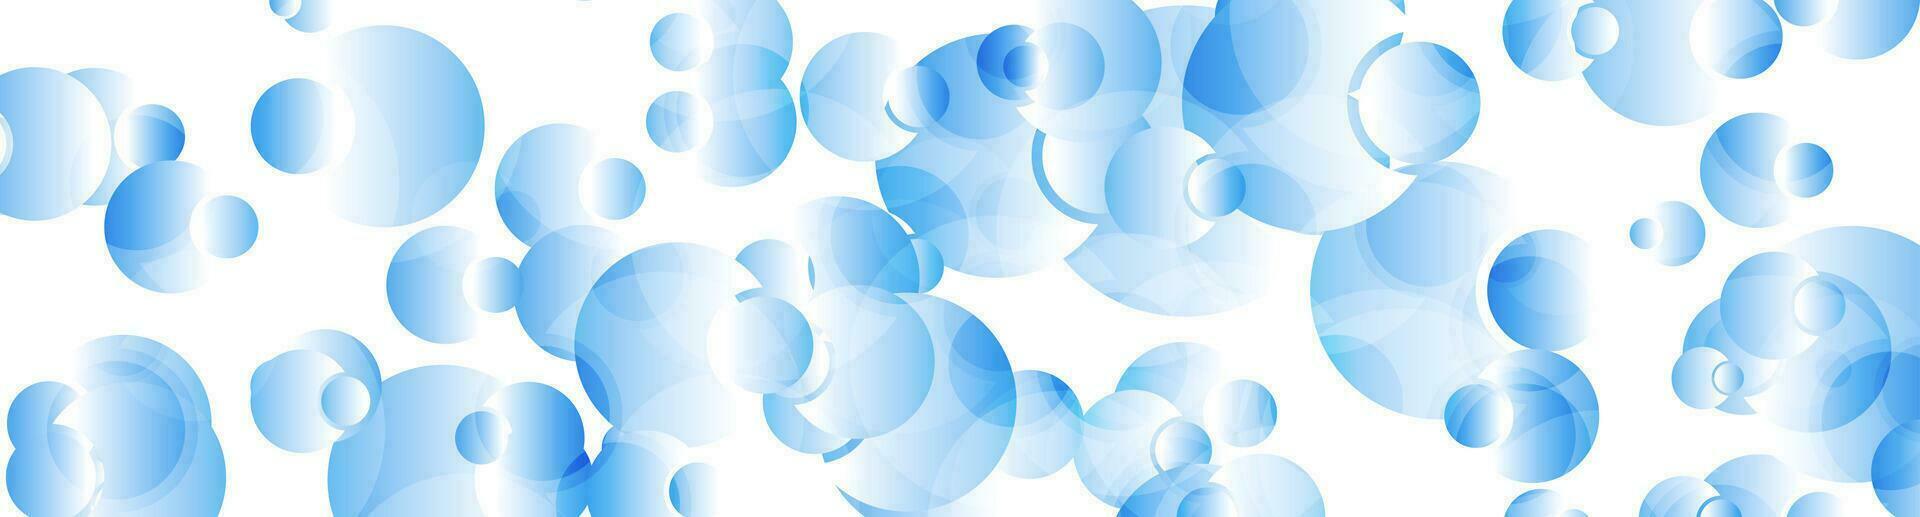 ljus blå glansig cirklar abstrakt tech bakgrund vektor